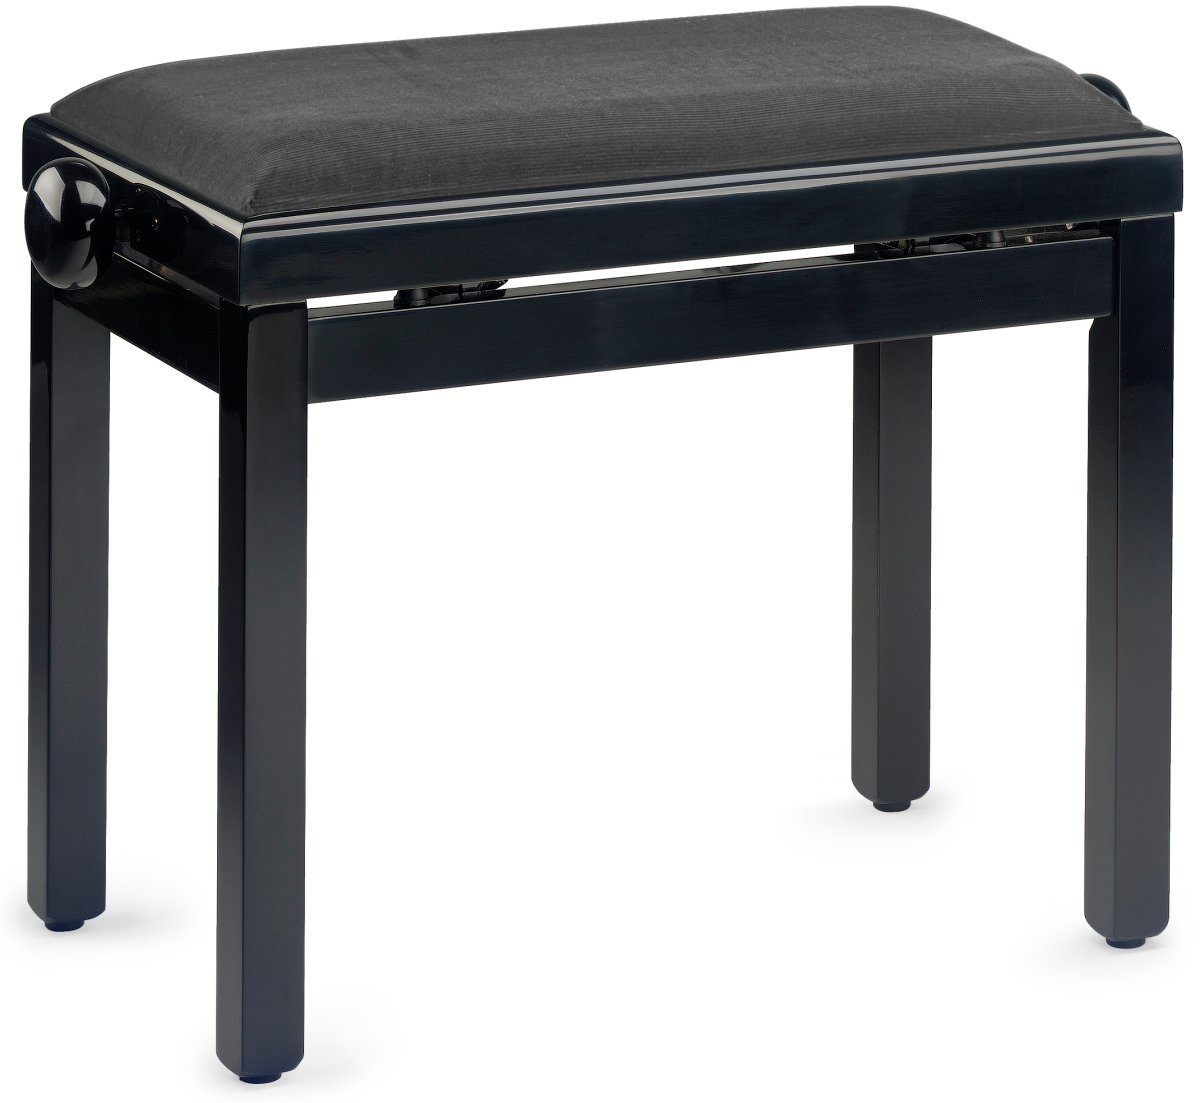 Stagg Klavierbank Klavierbank in Schwarz poliert mit schwarzem Stoffbezug